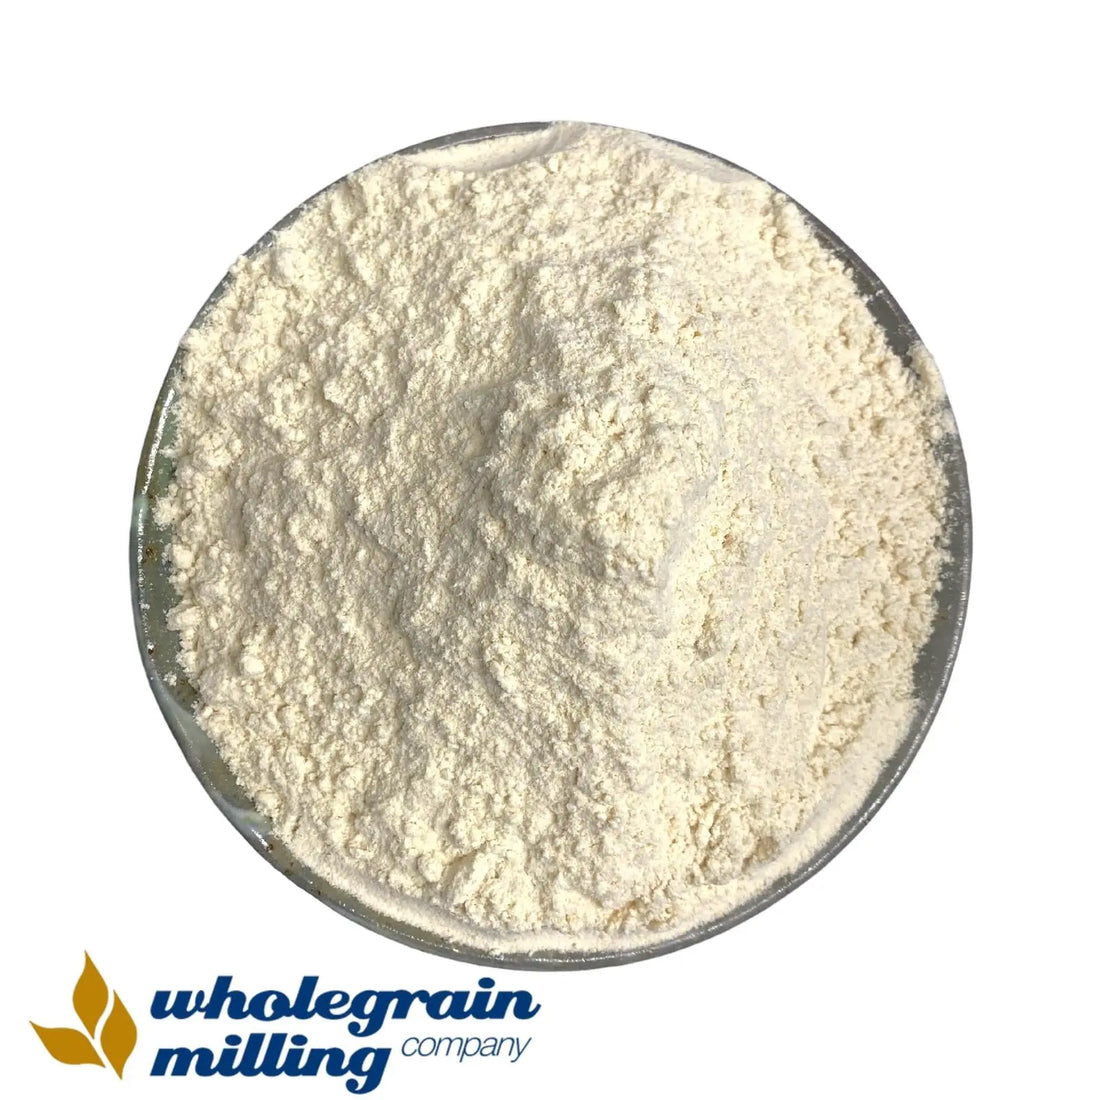 Heritage Wheat Flour White Stoneground Organic 1kg